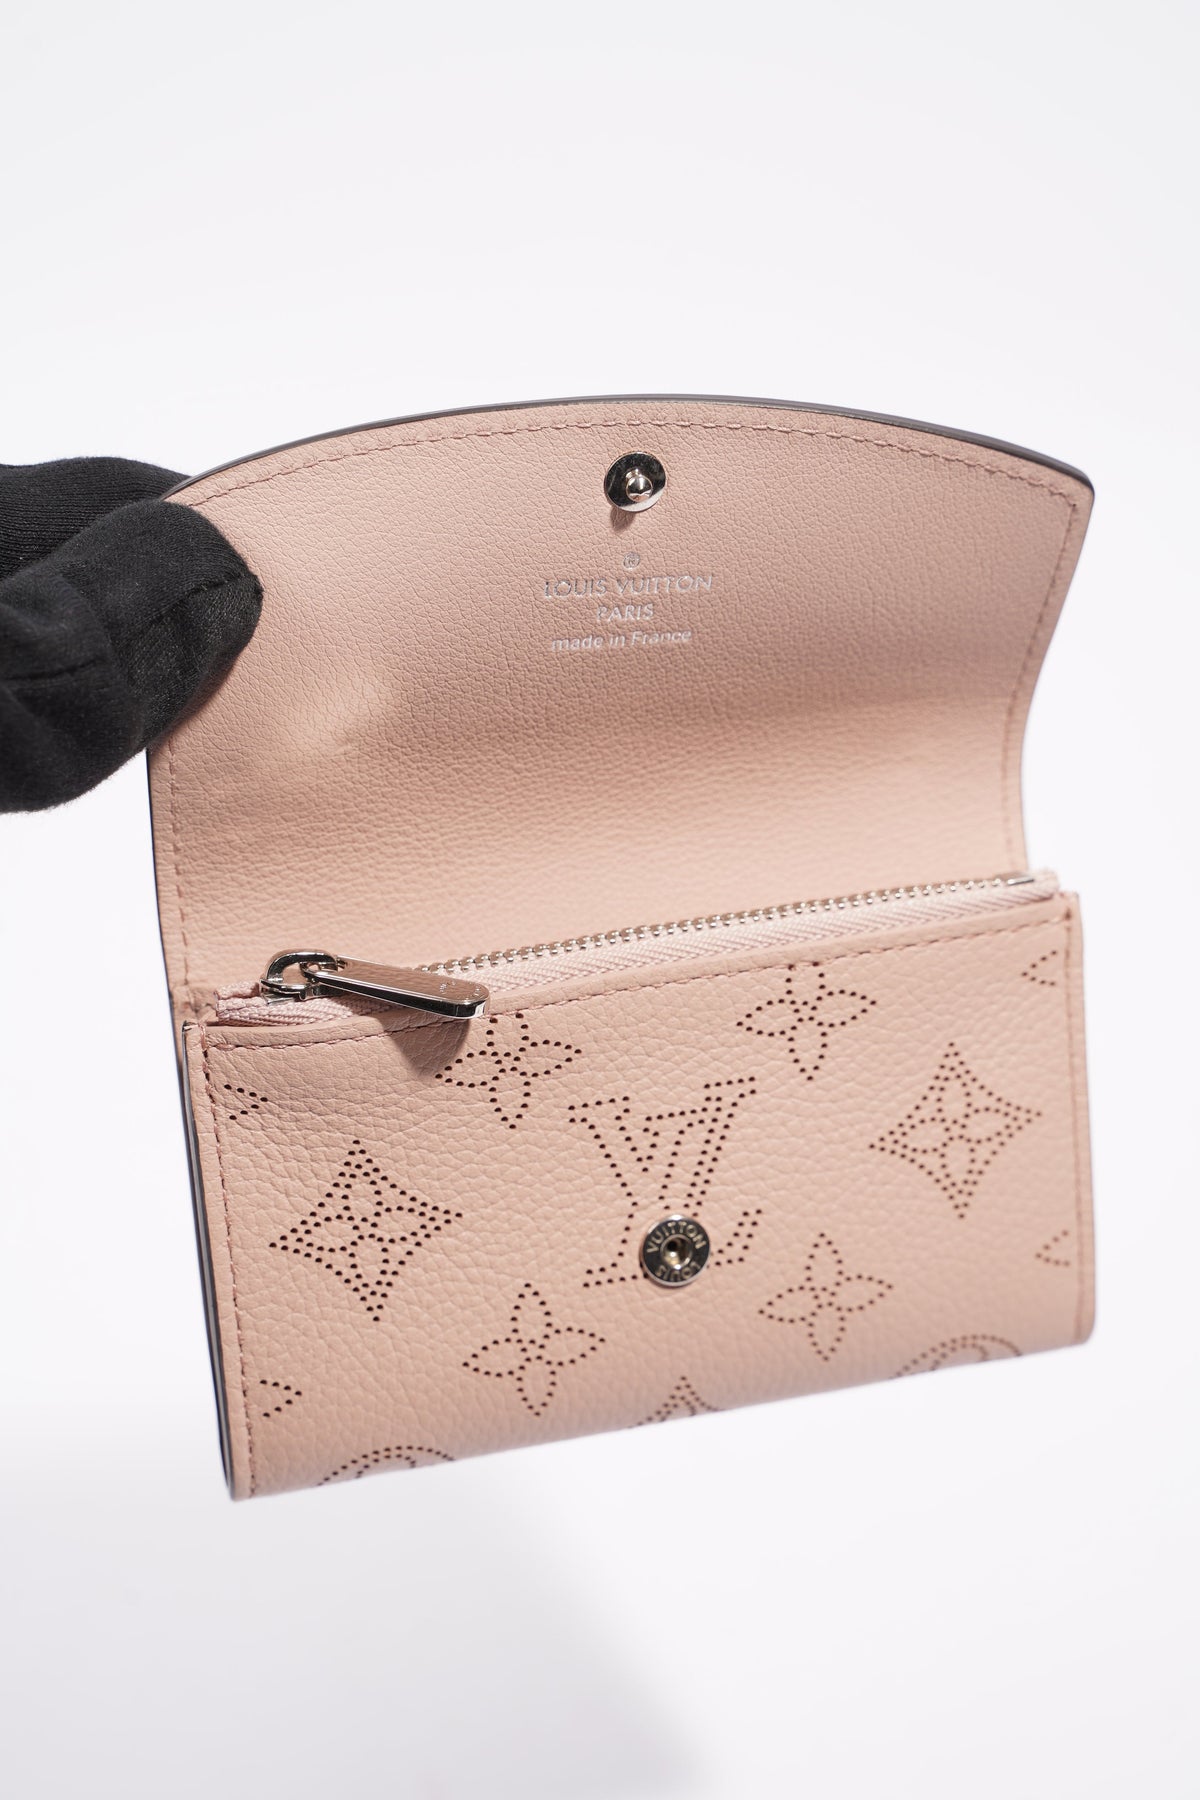 Louis Vuitton - Iris XS Wallet - Leather - Magnolia - Women - Luxury